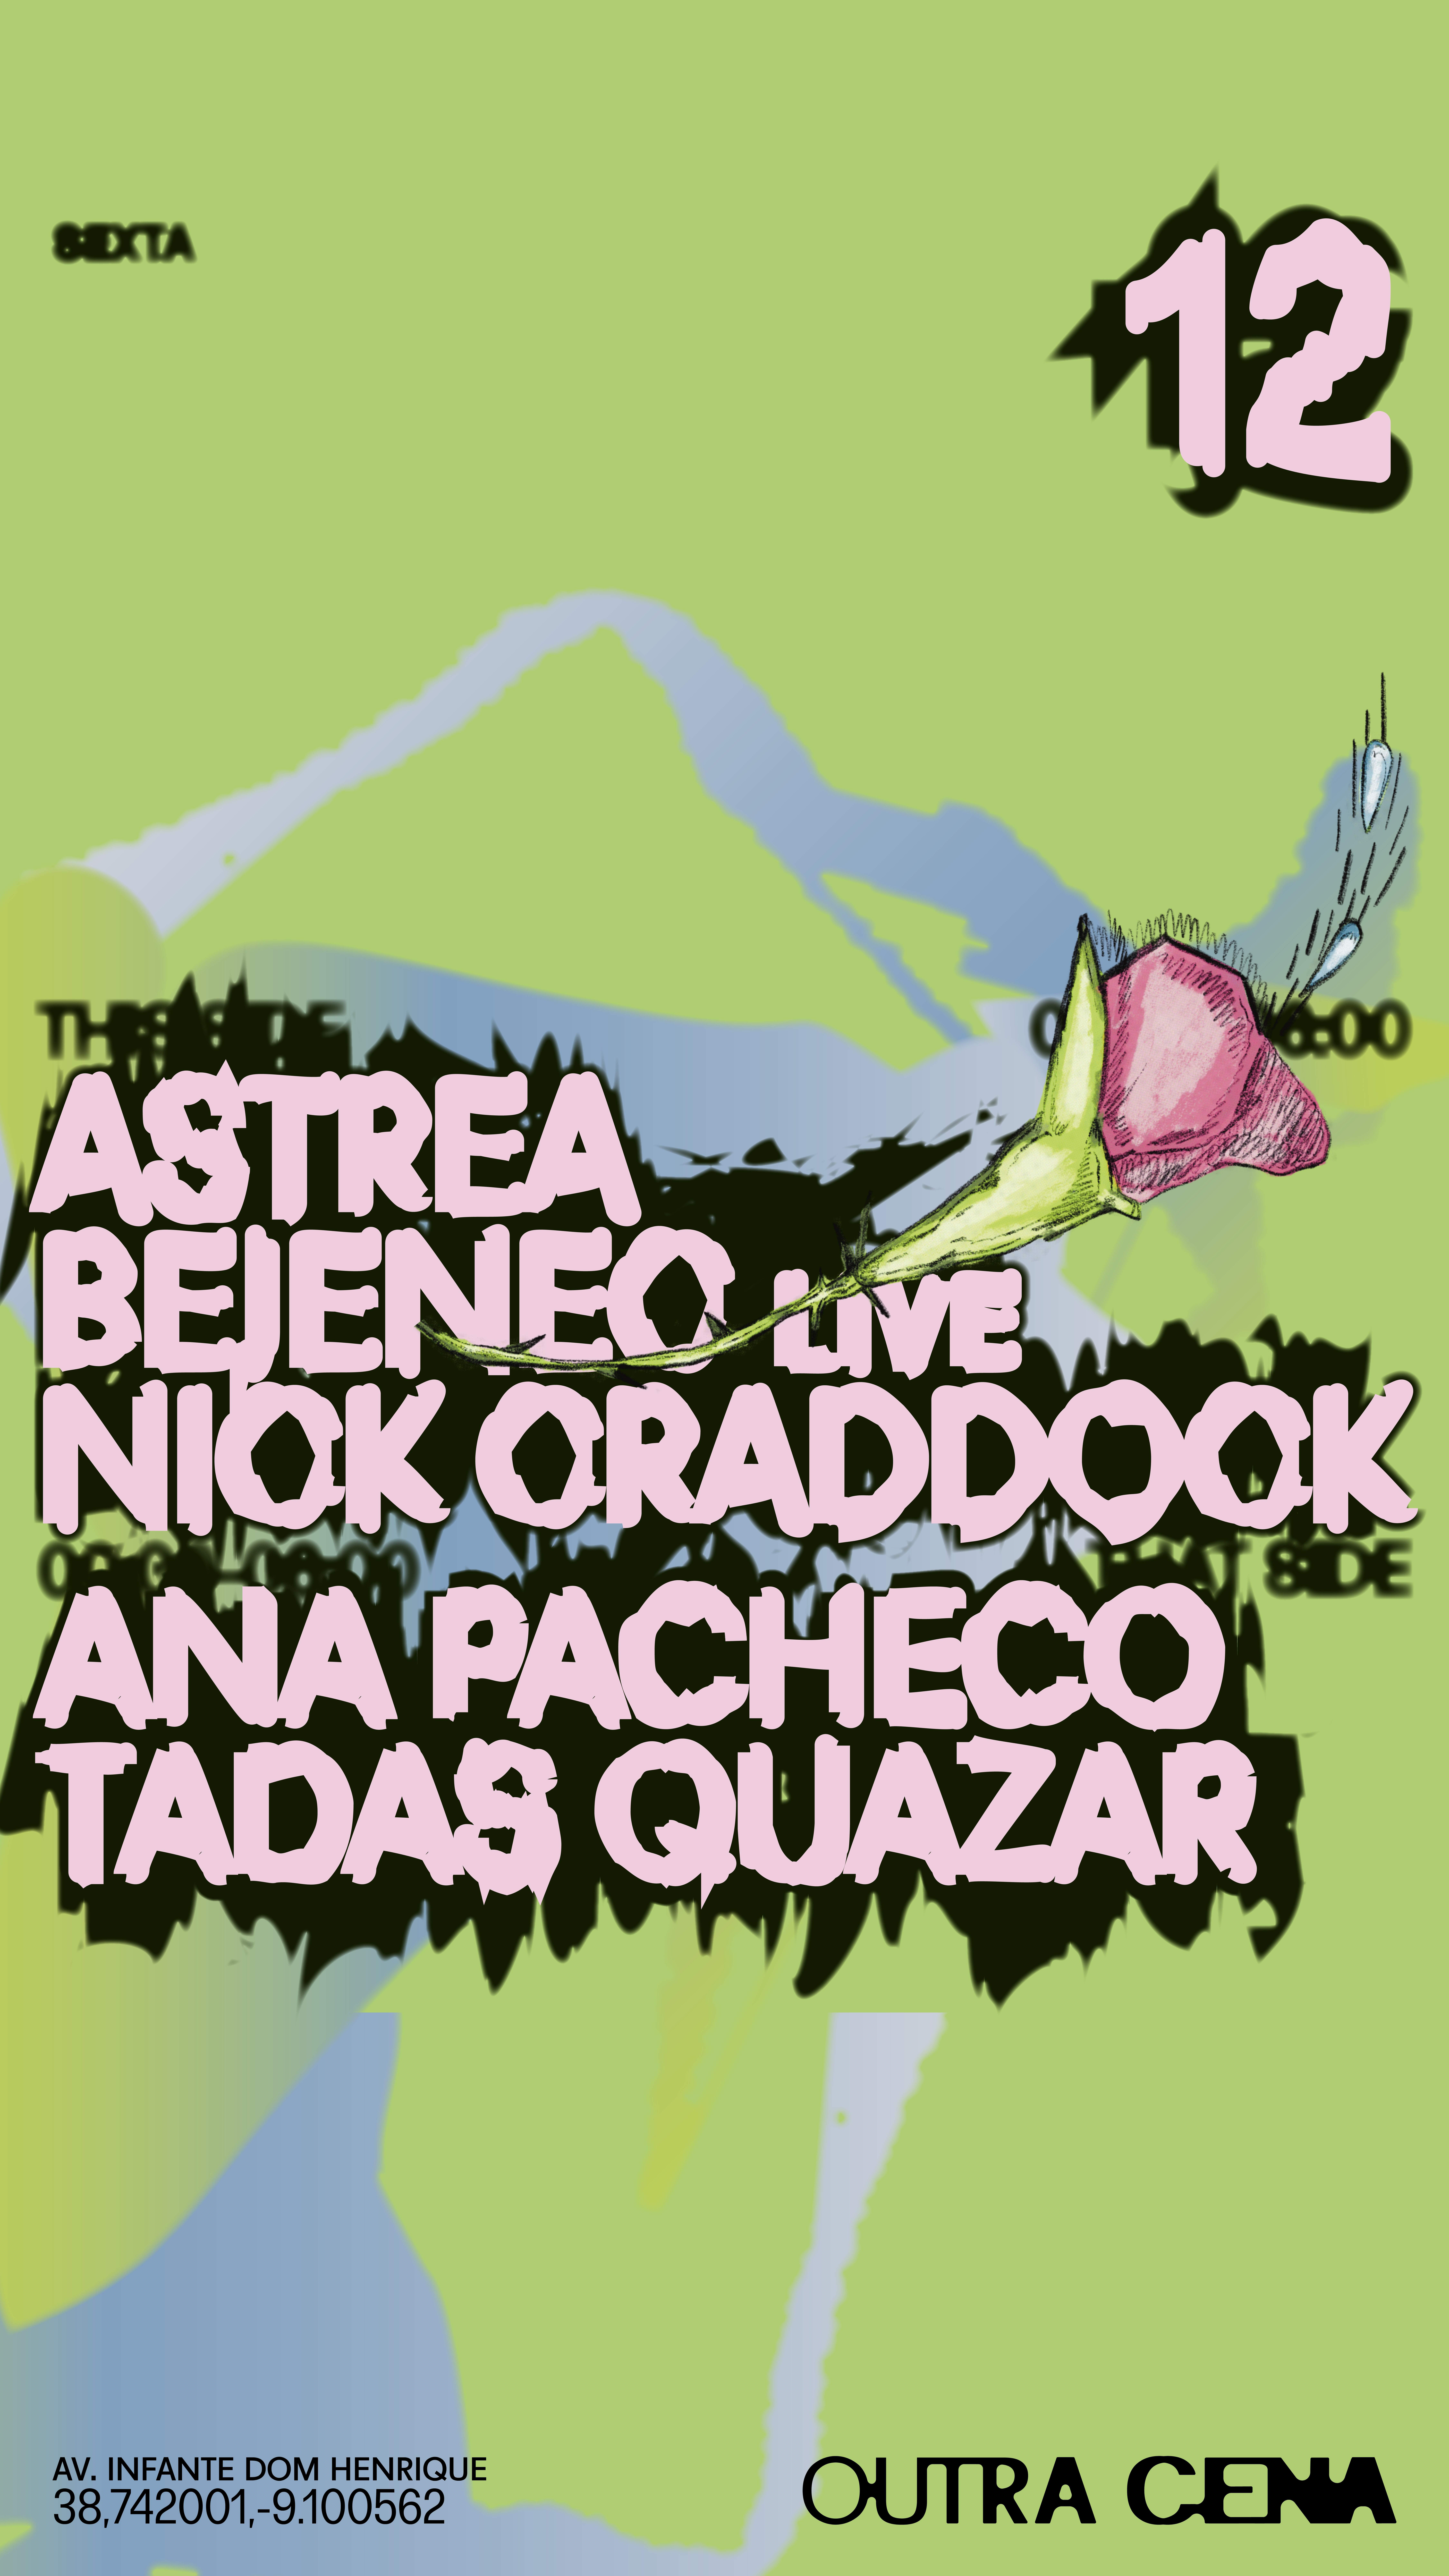 Ana Pacheco, Astrea, Bejenec live, Nick Craddock, Tadas Quazar - Página trasera